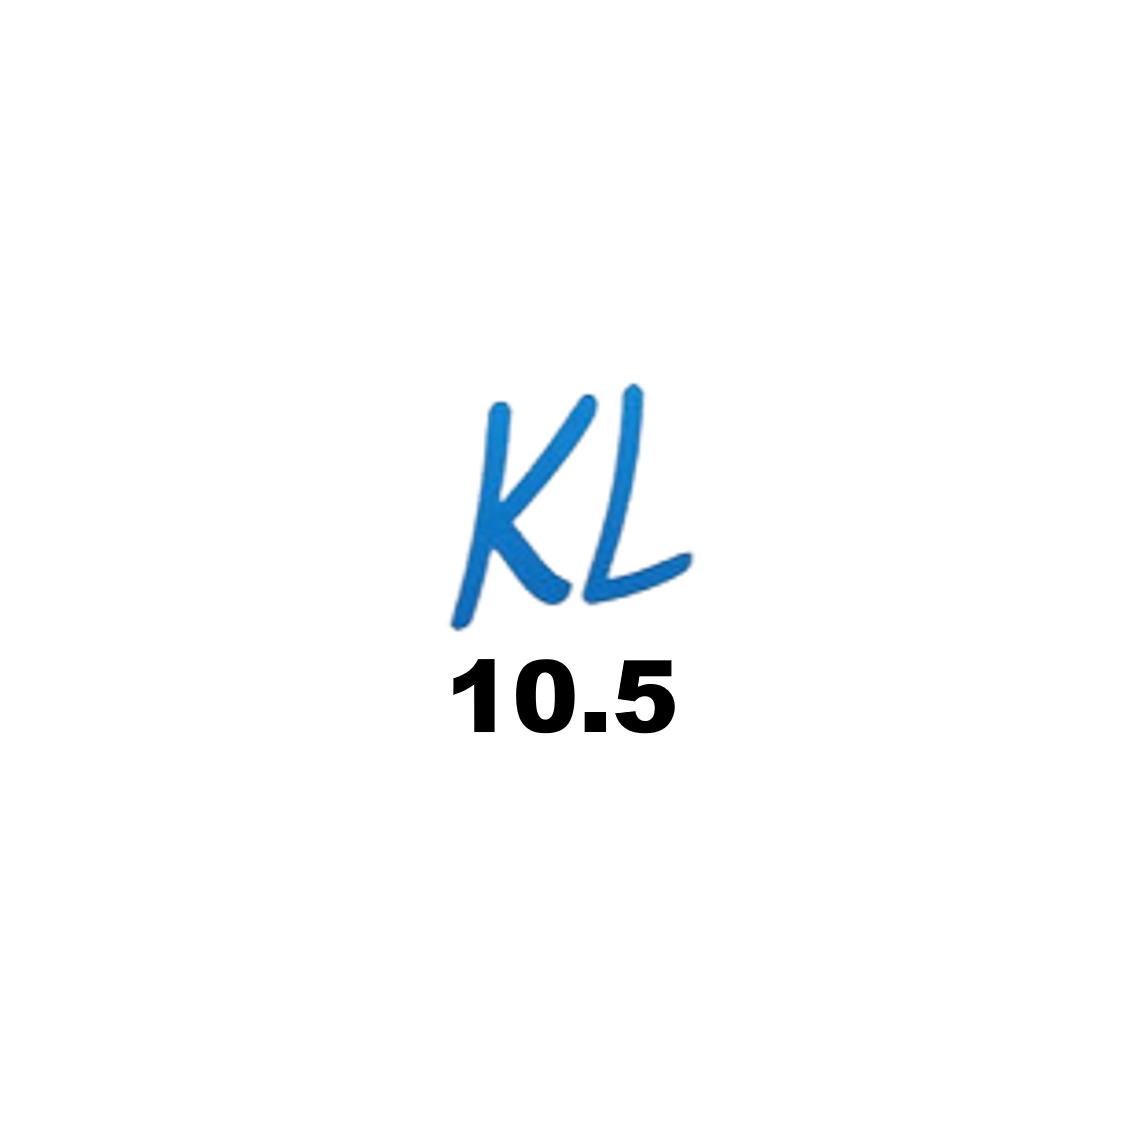 KL 10.5